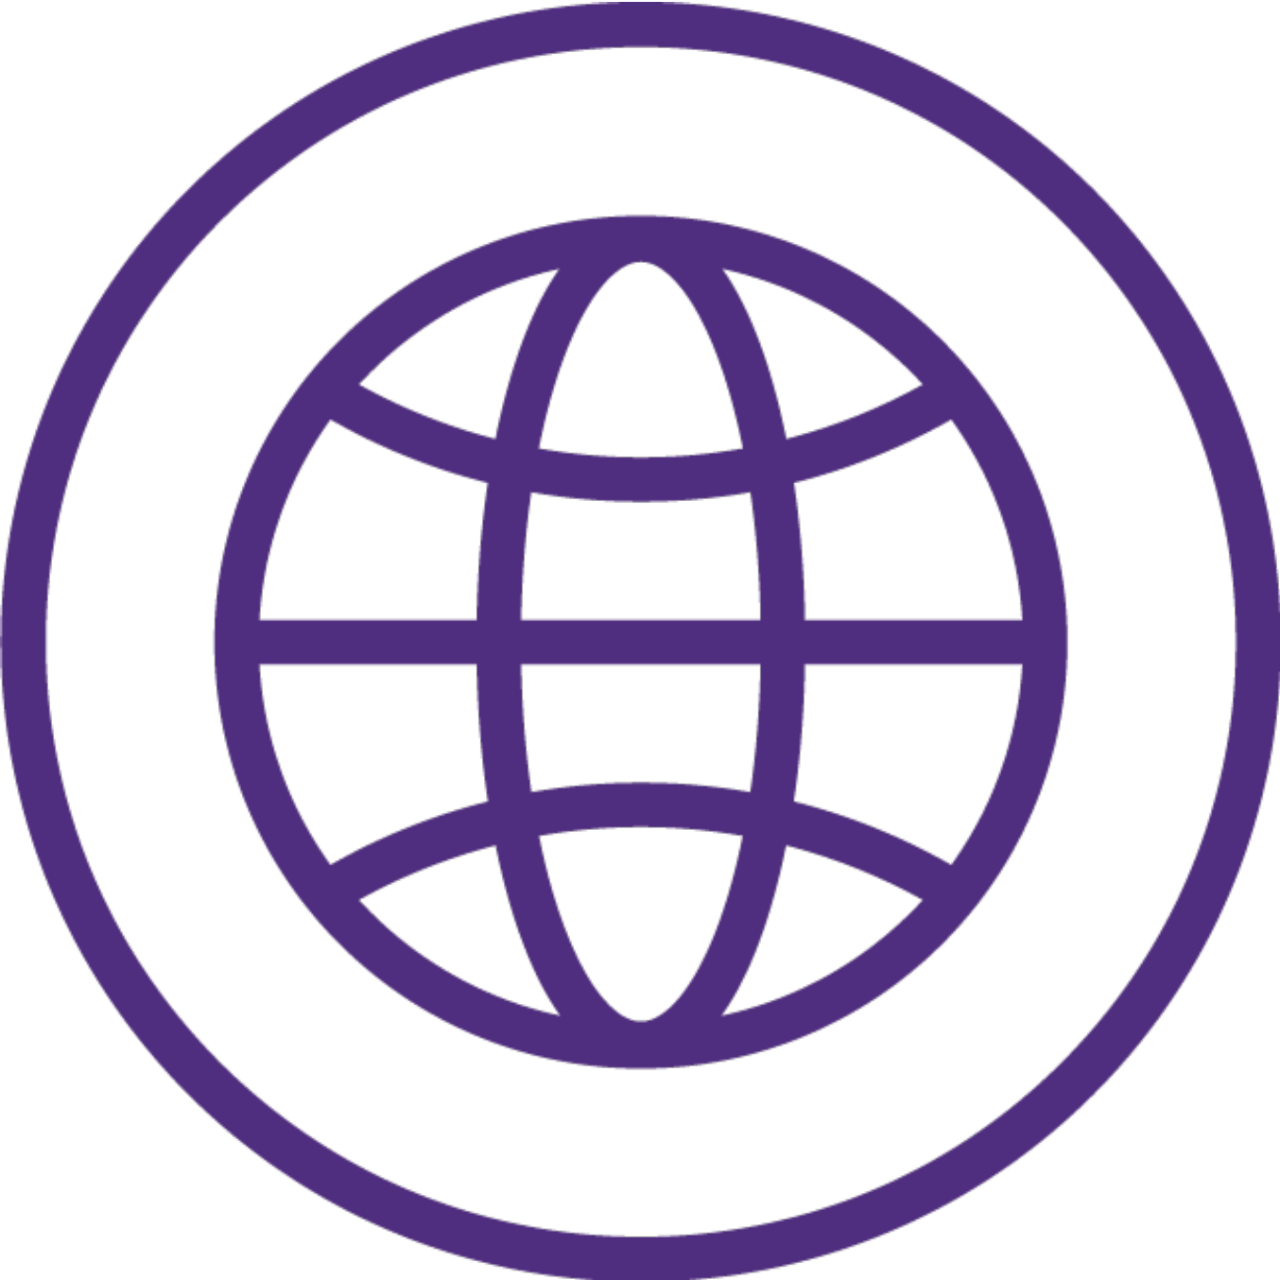 Icon Globe